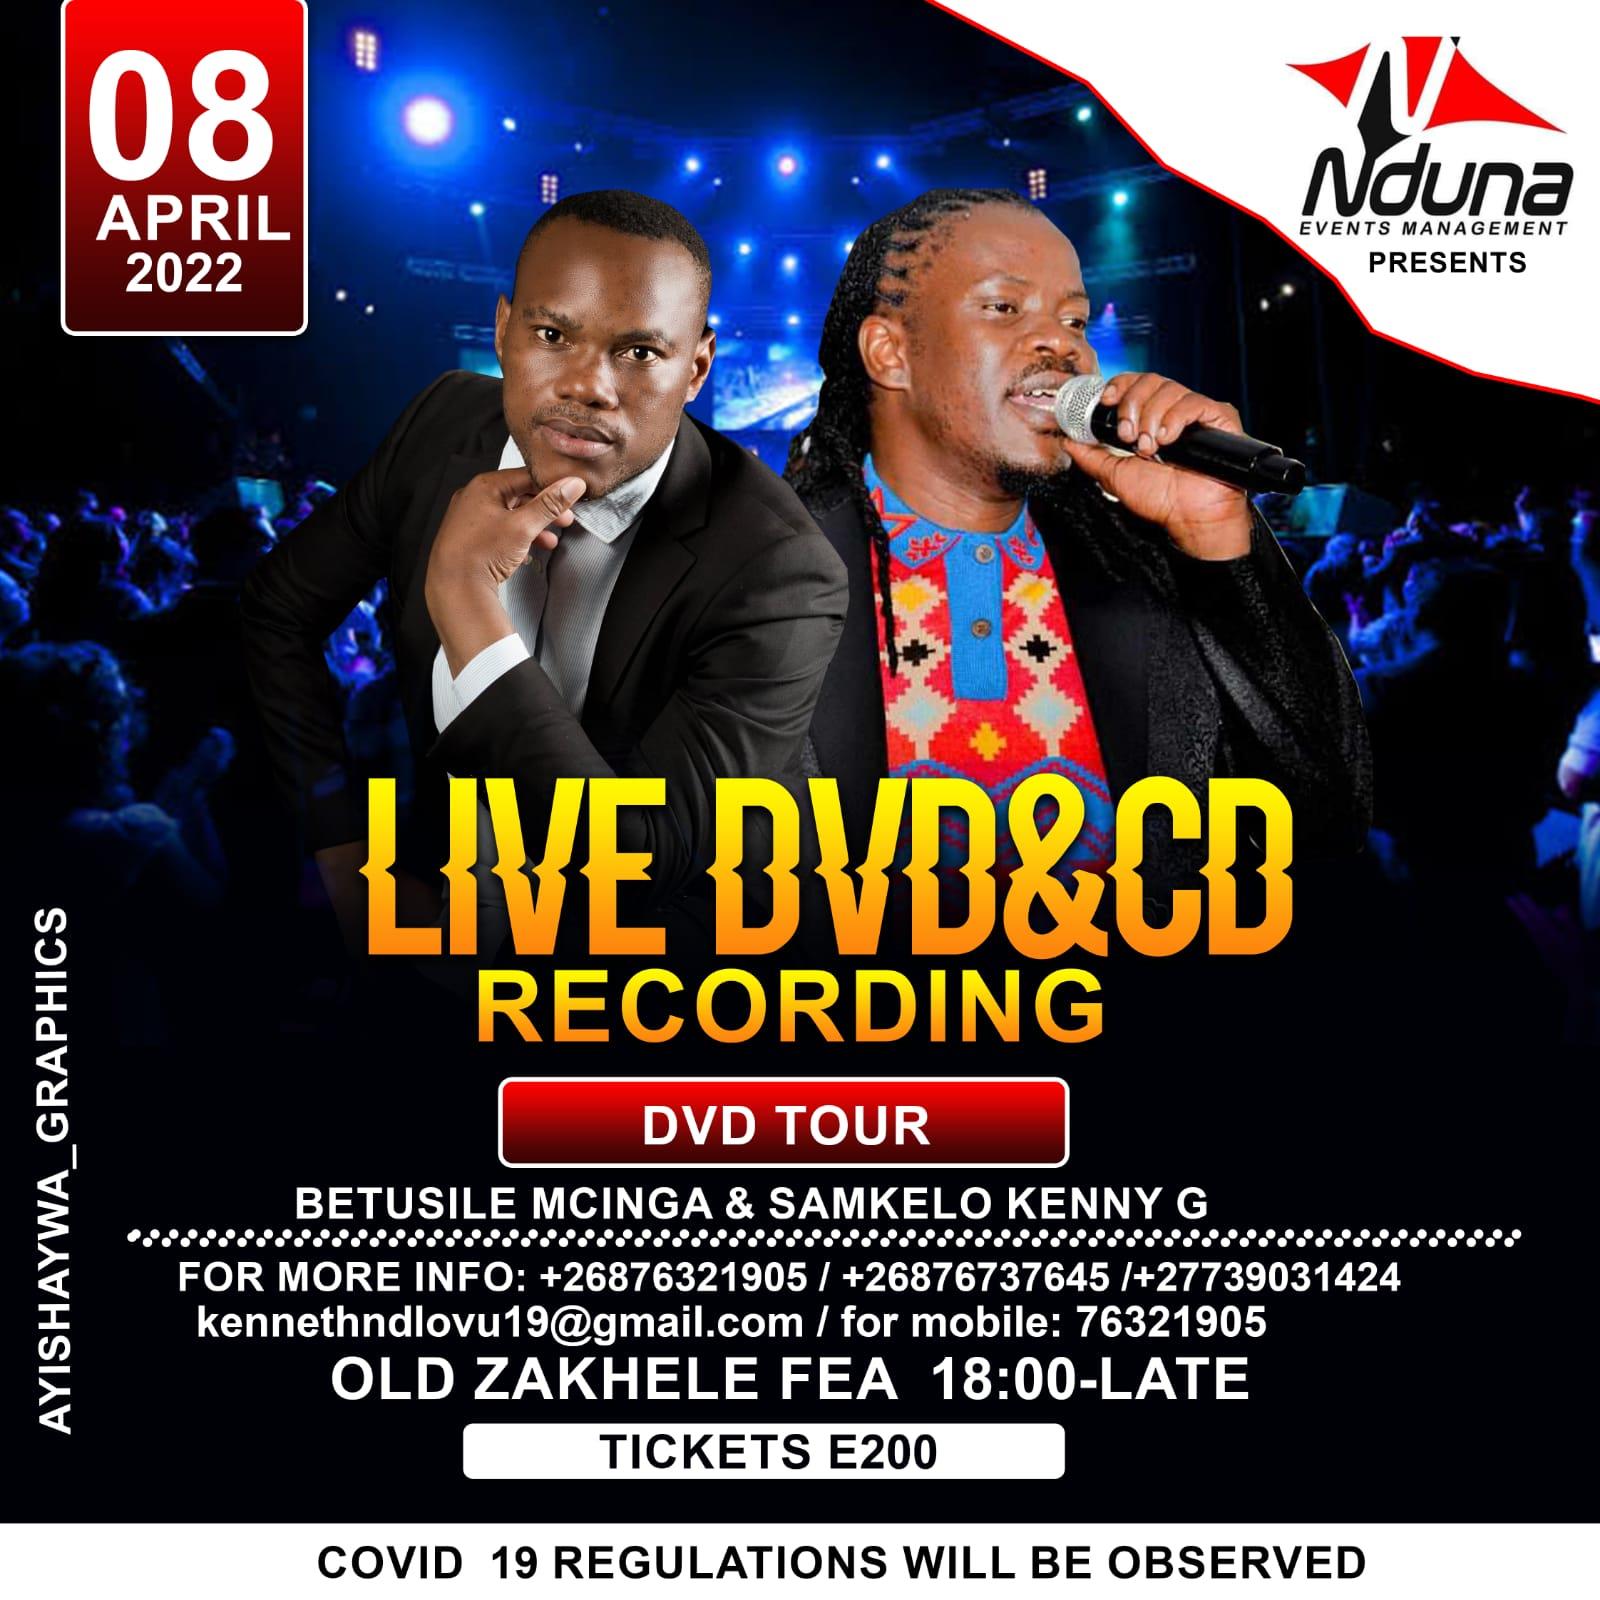 Betusile Mcinga And Samkelo Kenny G Live DVD CD Recording Pic